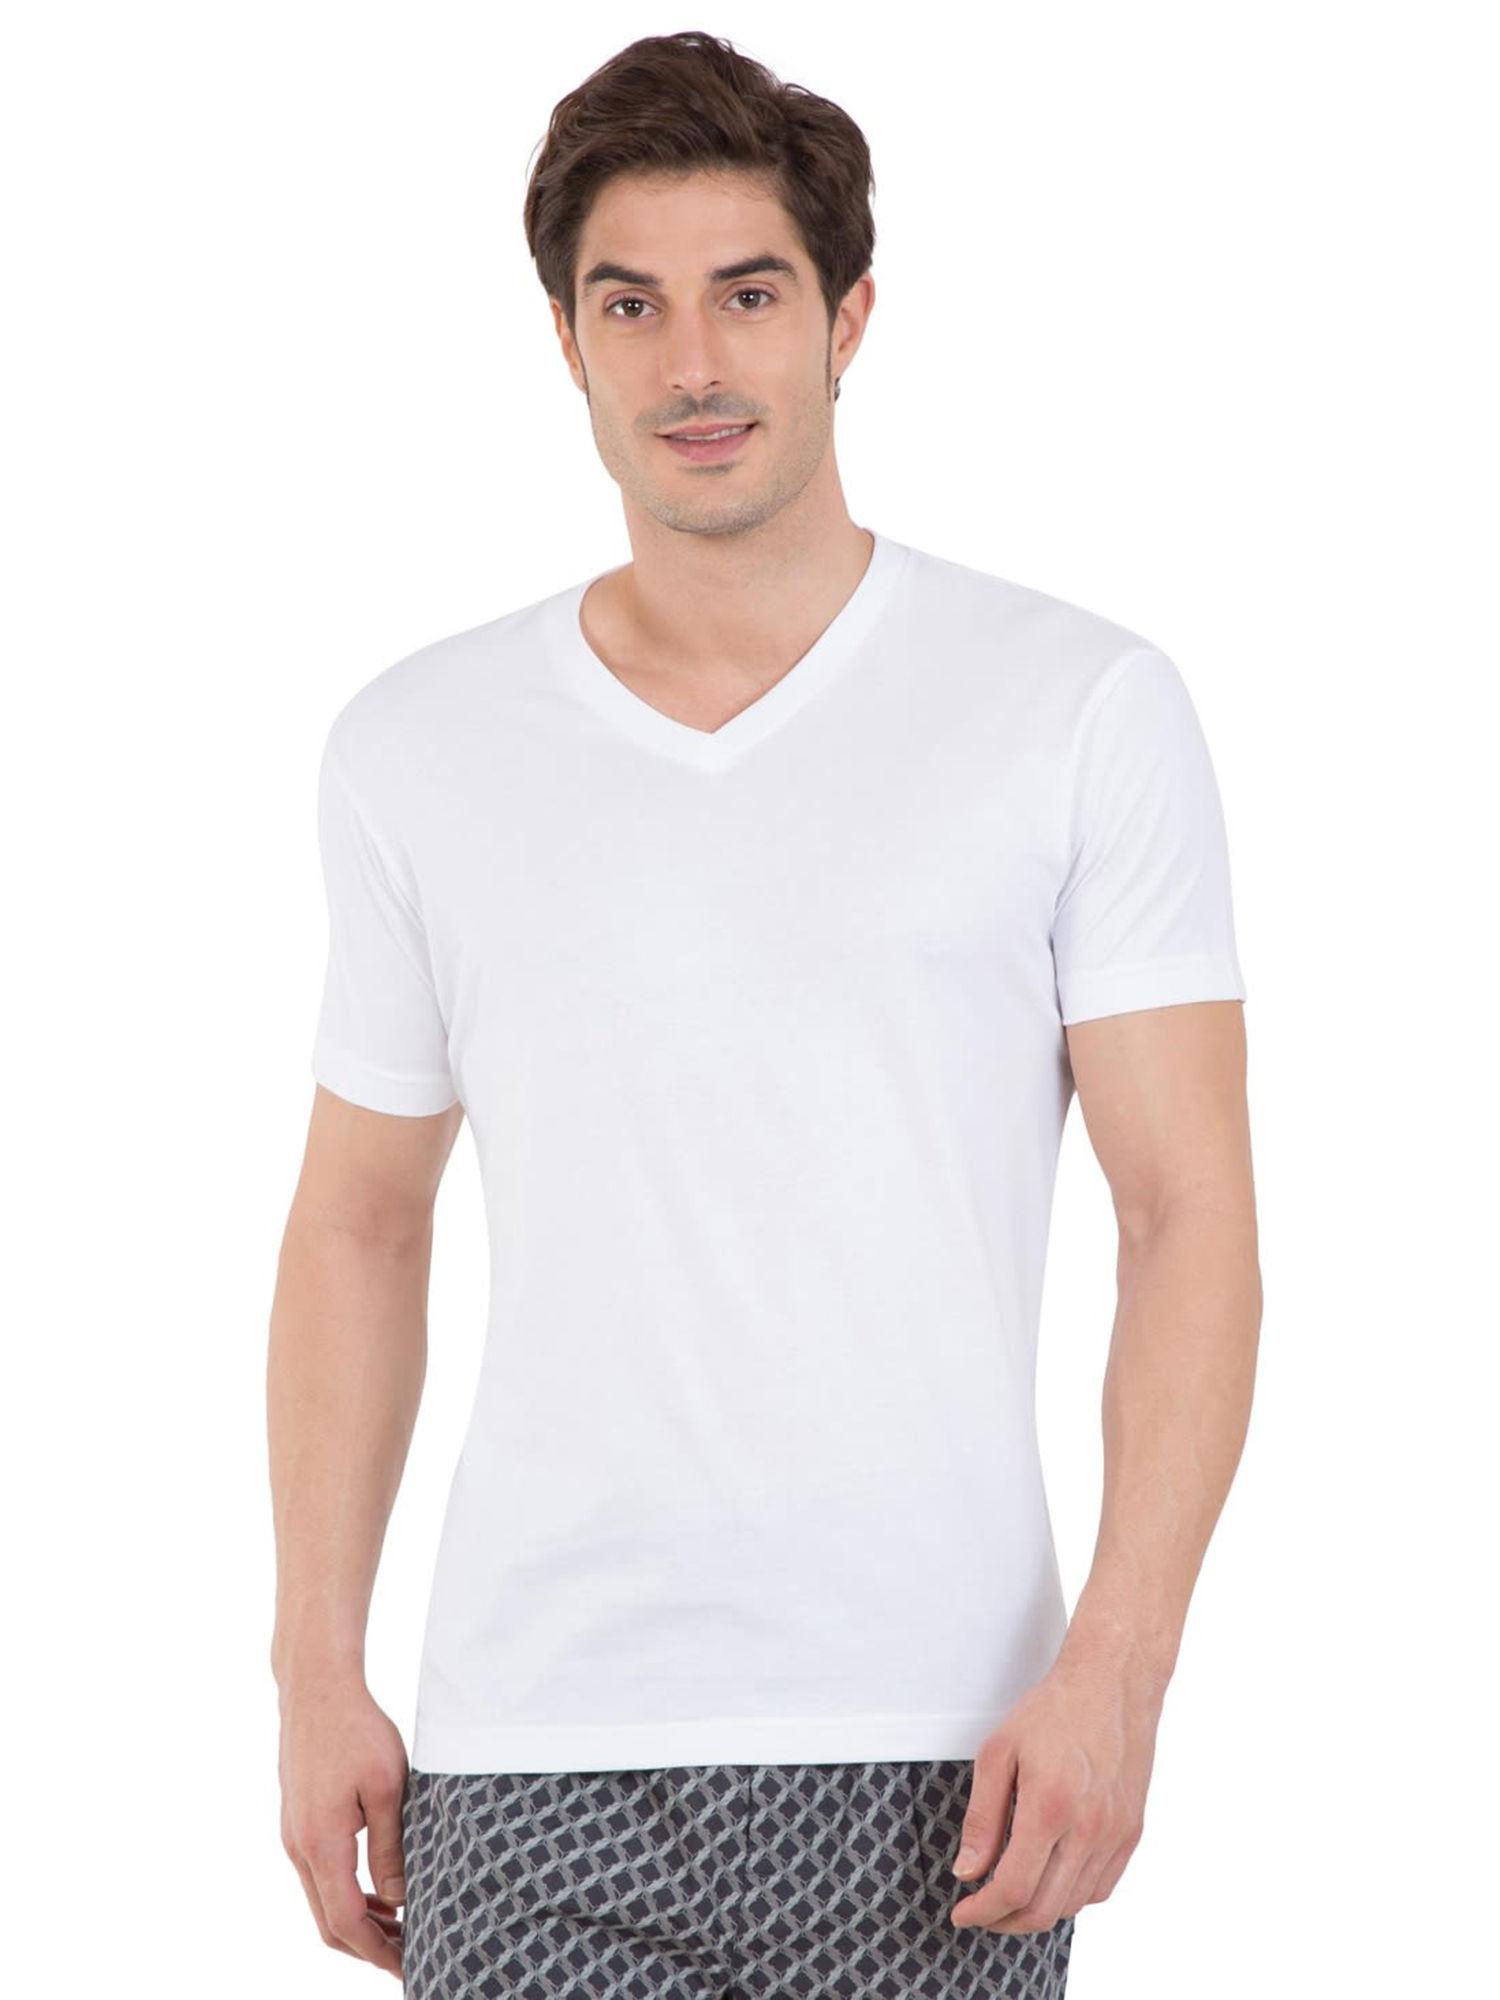 white v-neck t-shirt